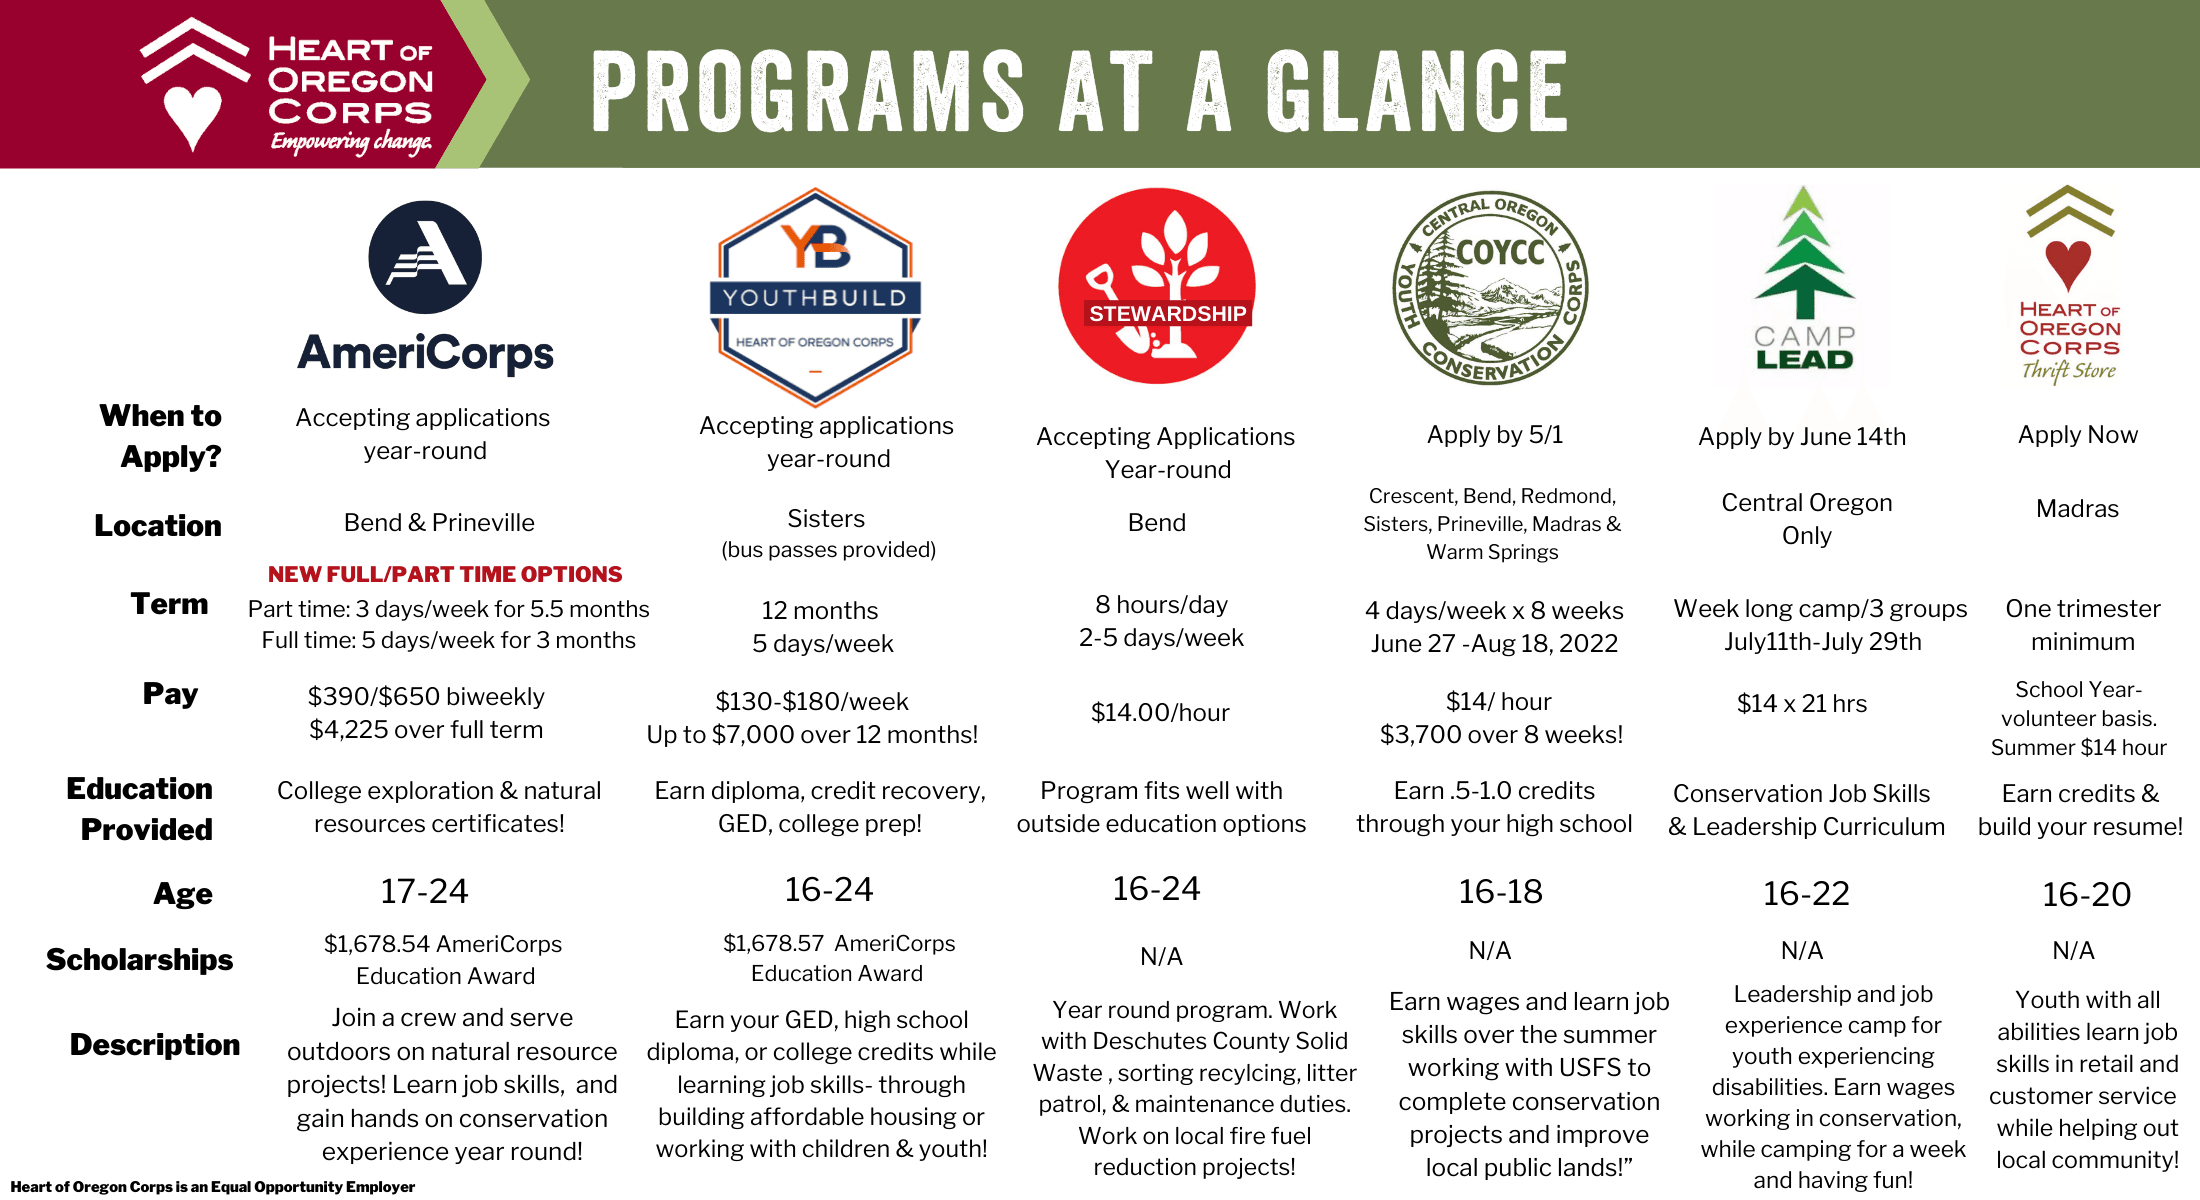 Heart of Oregon Programs